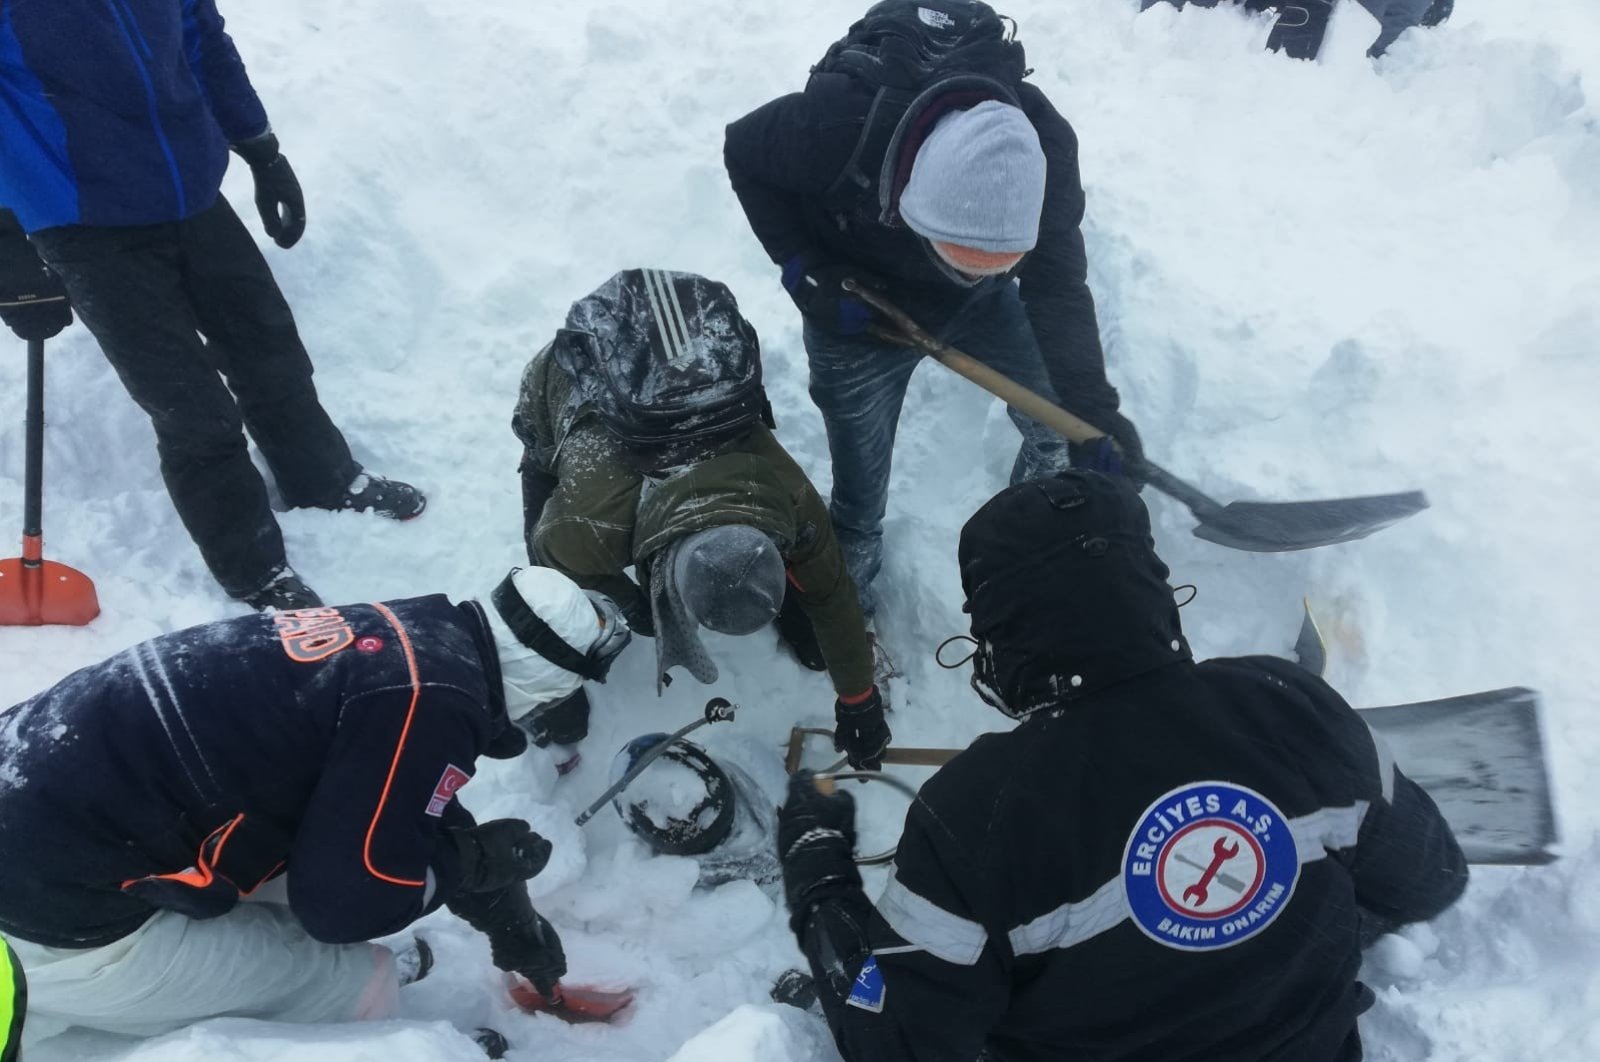 Diplomat Kanada tewas akibat longsoran salju di Gunung Erciyes Turki